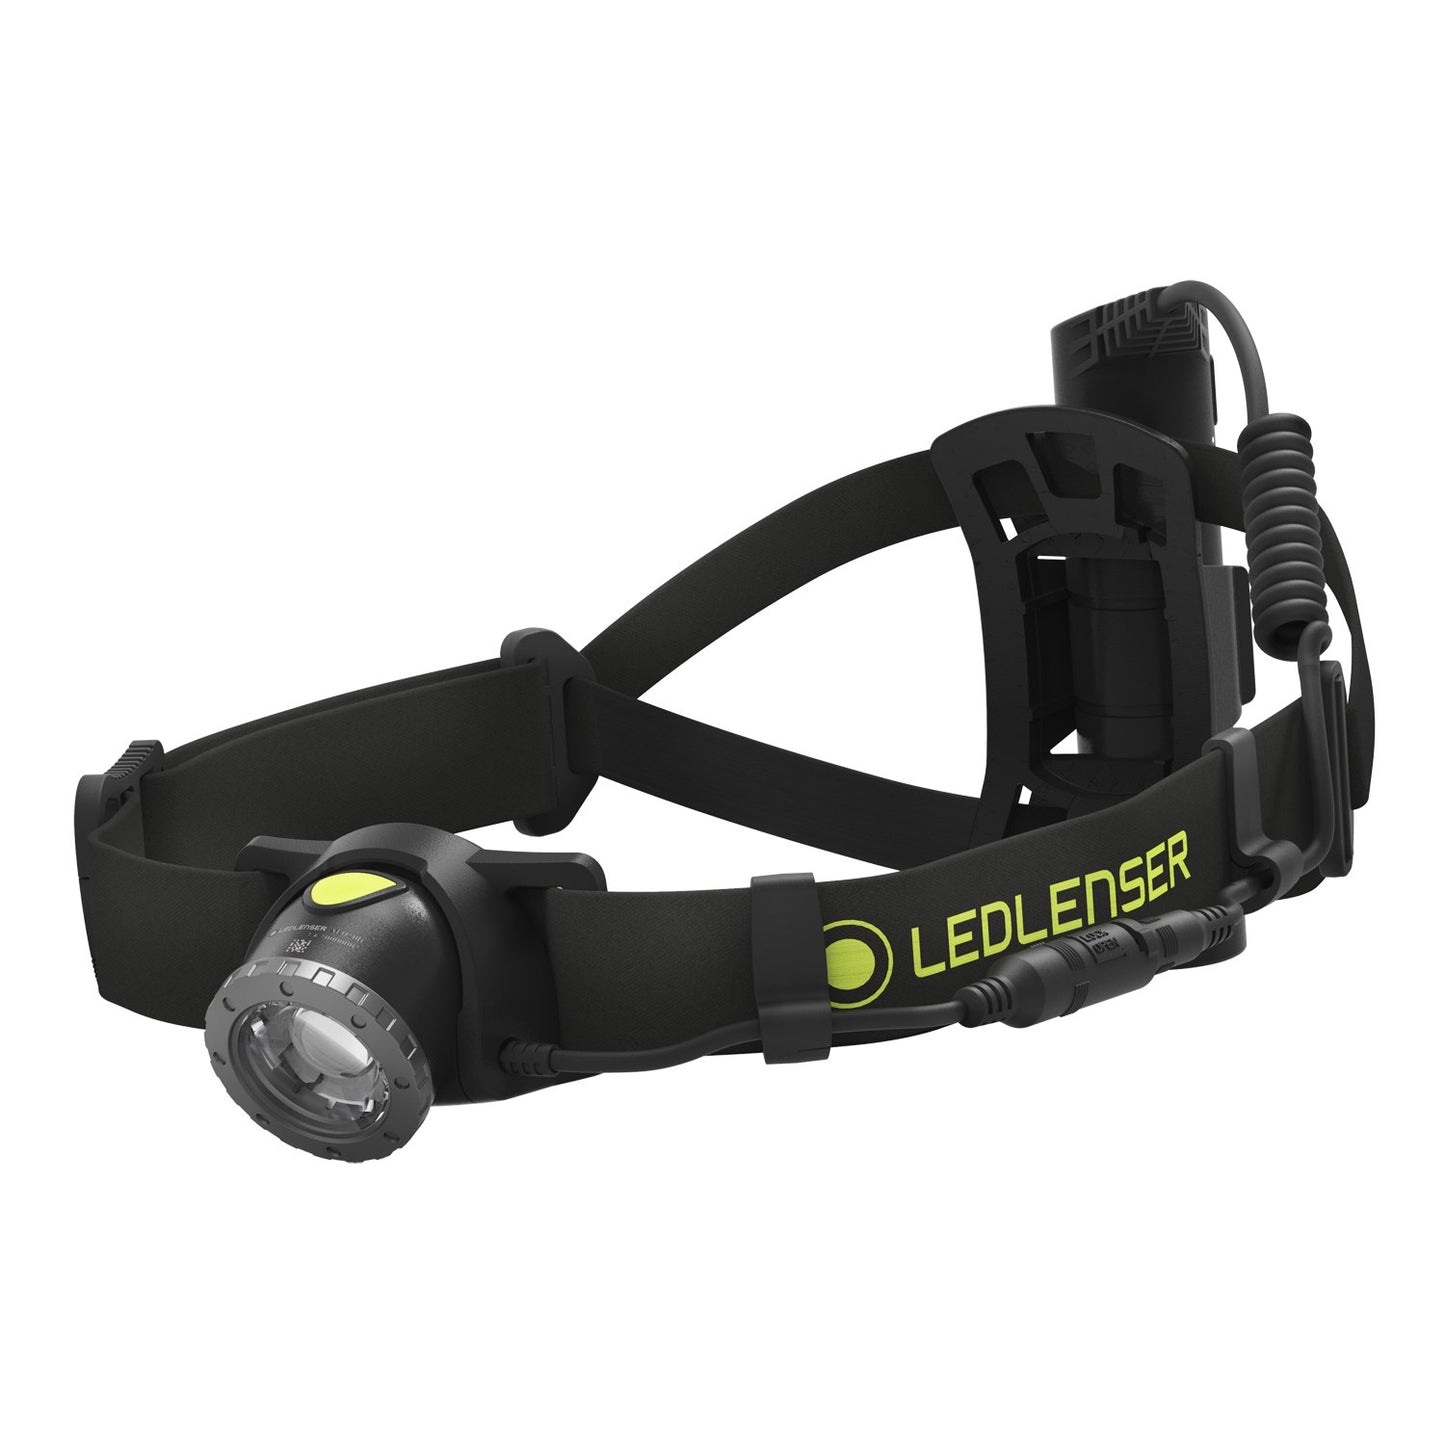 Ledlenser - NEO10R headlamp - 600 lumens